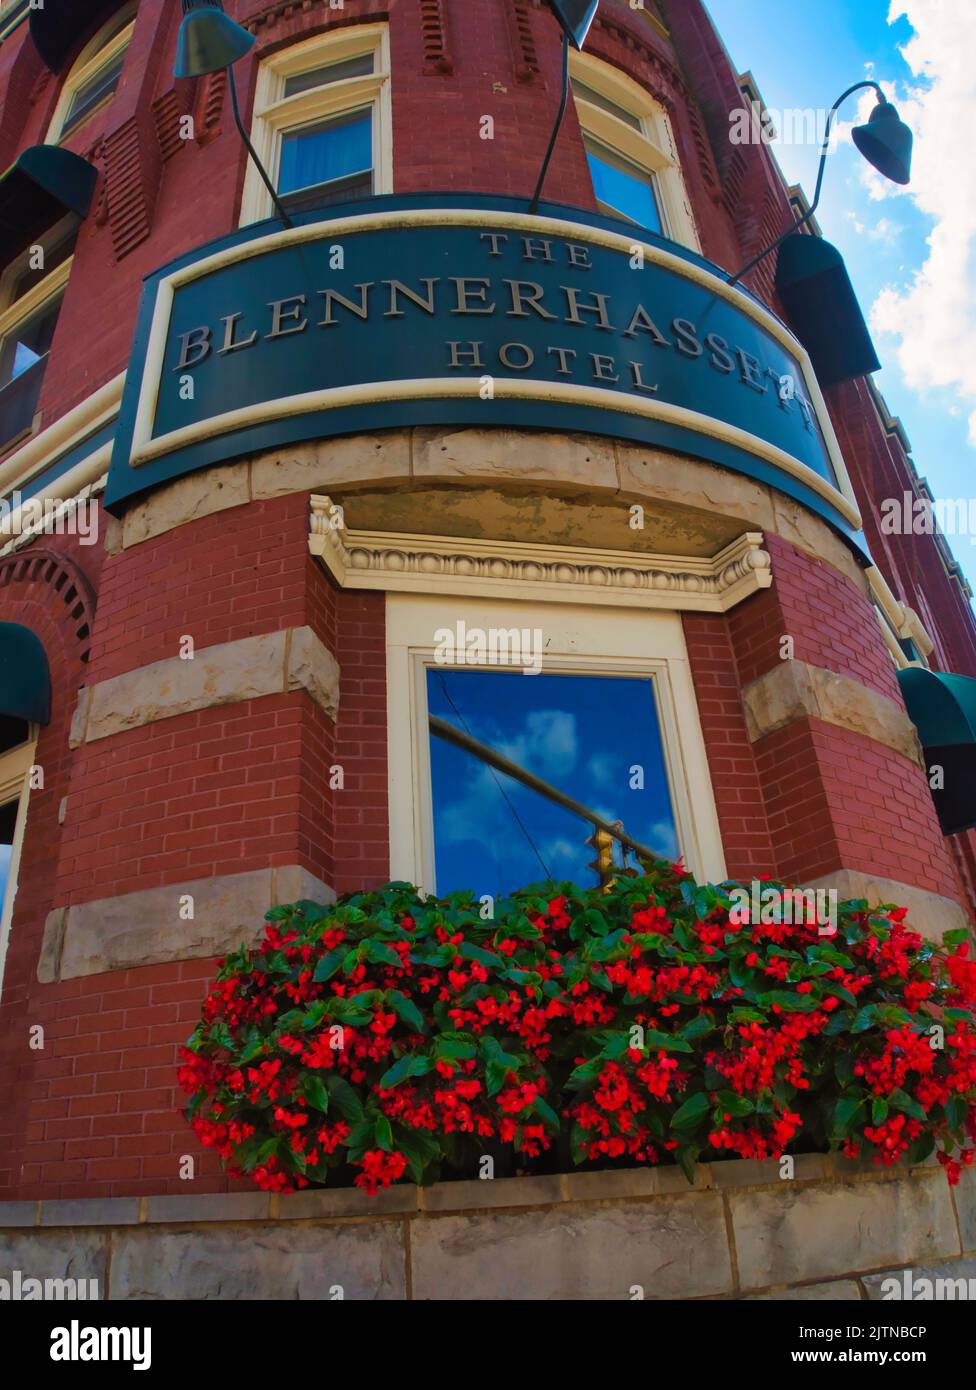 L'hôtel Blennerhassett est un hôtel historique situé à Parkersburg, dans le comté de Wood, en Virginie occidentale. Banque D'Images